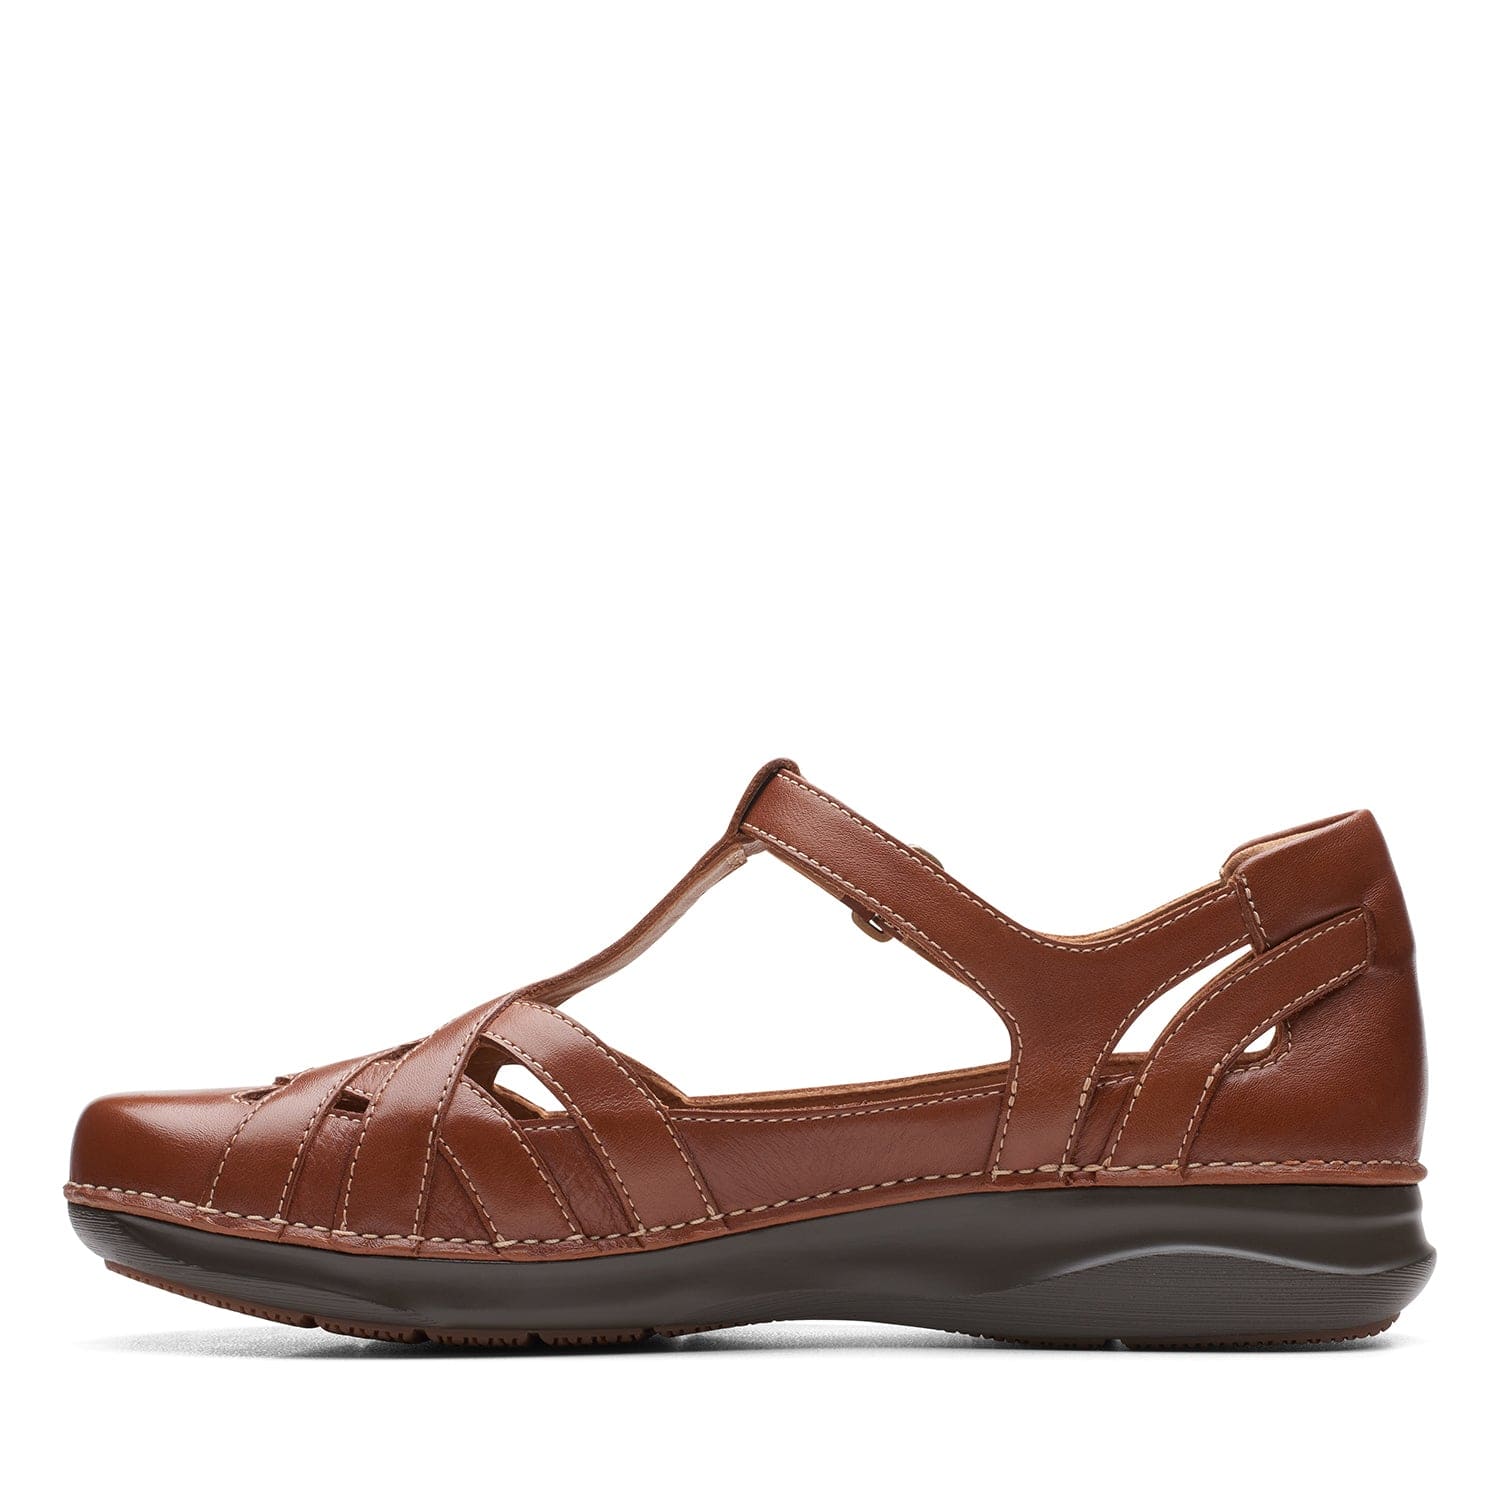 Clarks Appley Way - Shoes - Dark Tan Lea - 261655295 - E Width (Wide Fit)